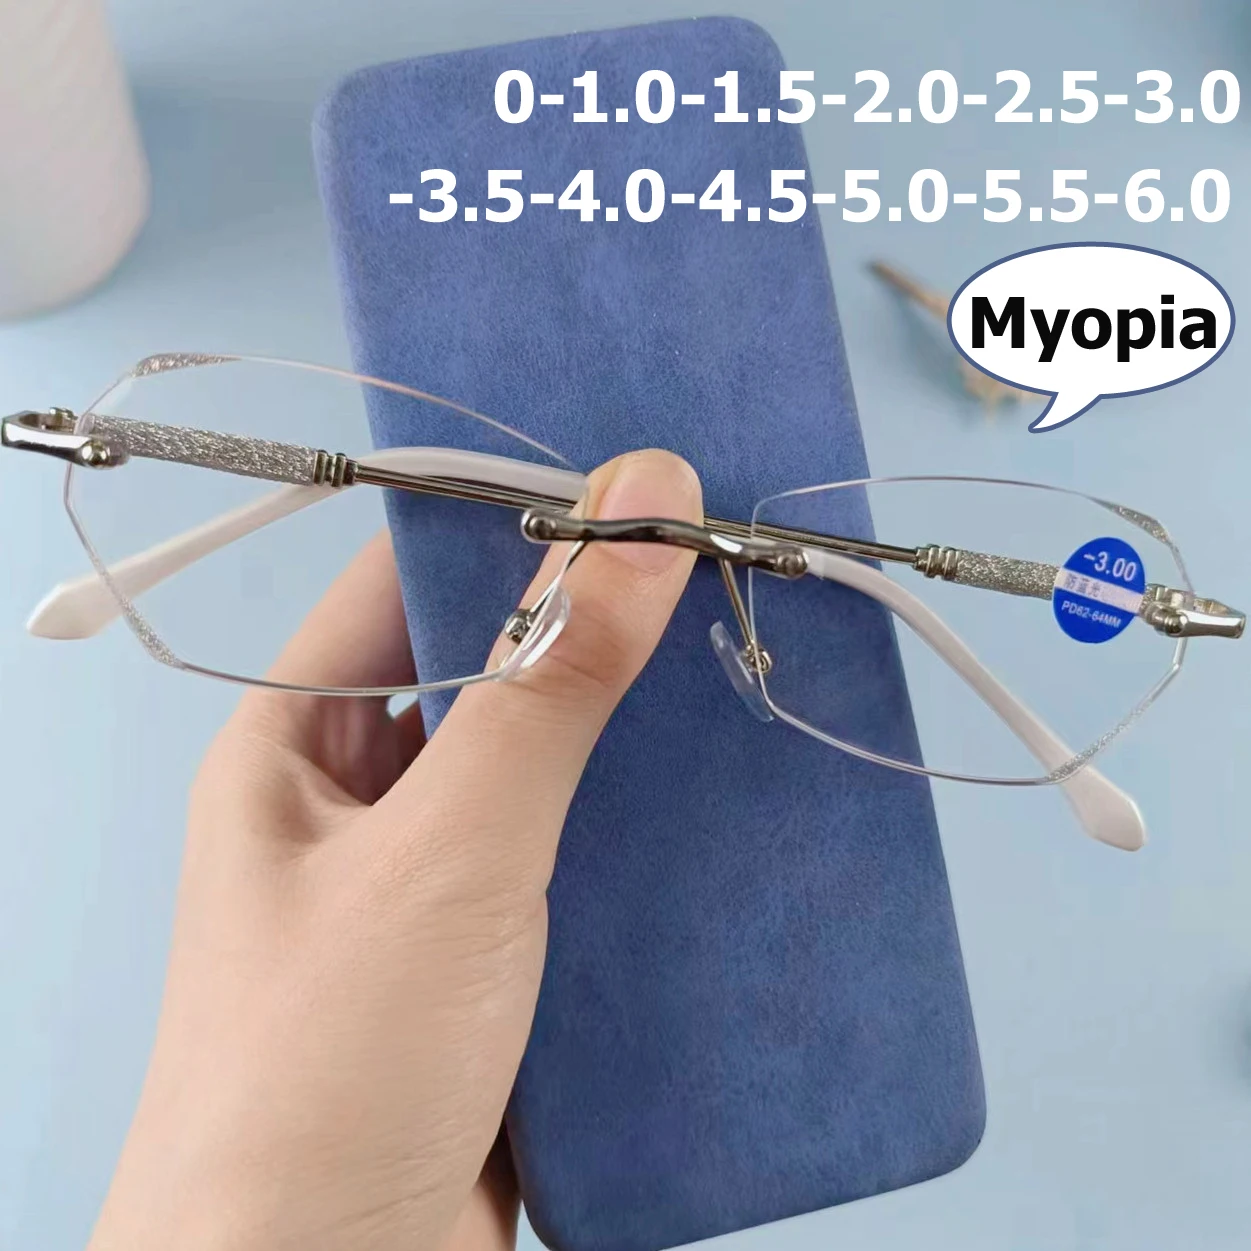 

Fashion Ladies Myopia Glasses Unisex Anti-blue Blocking Nearsighted Eyeglasses Finished Optical Eyewear Diopter 0 To -6.0